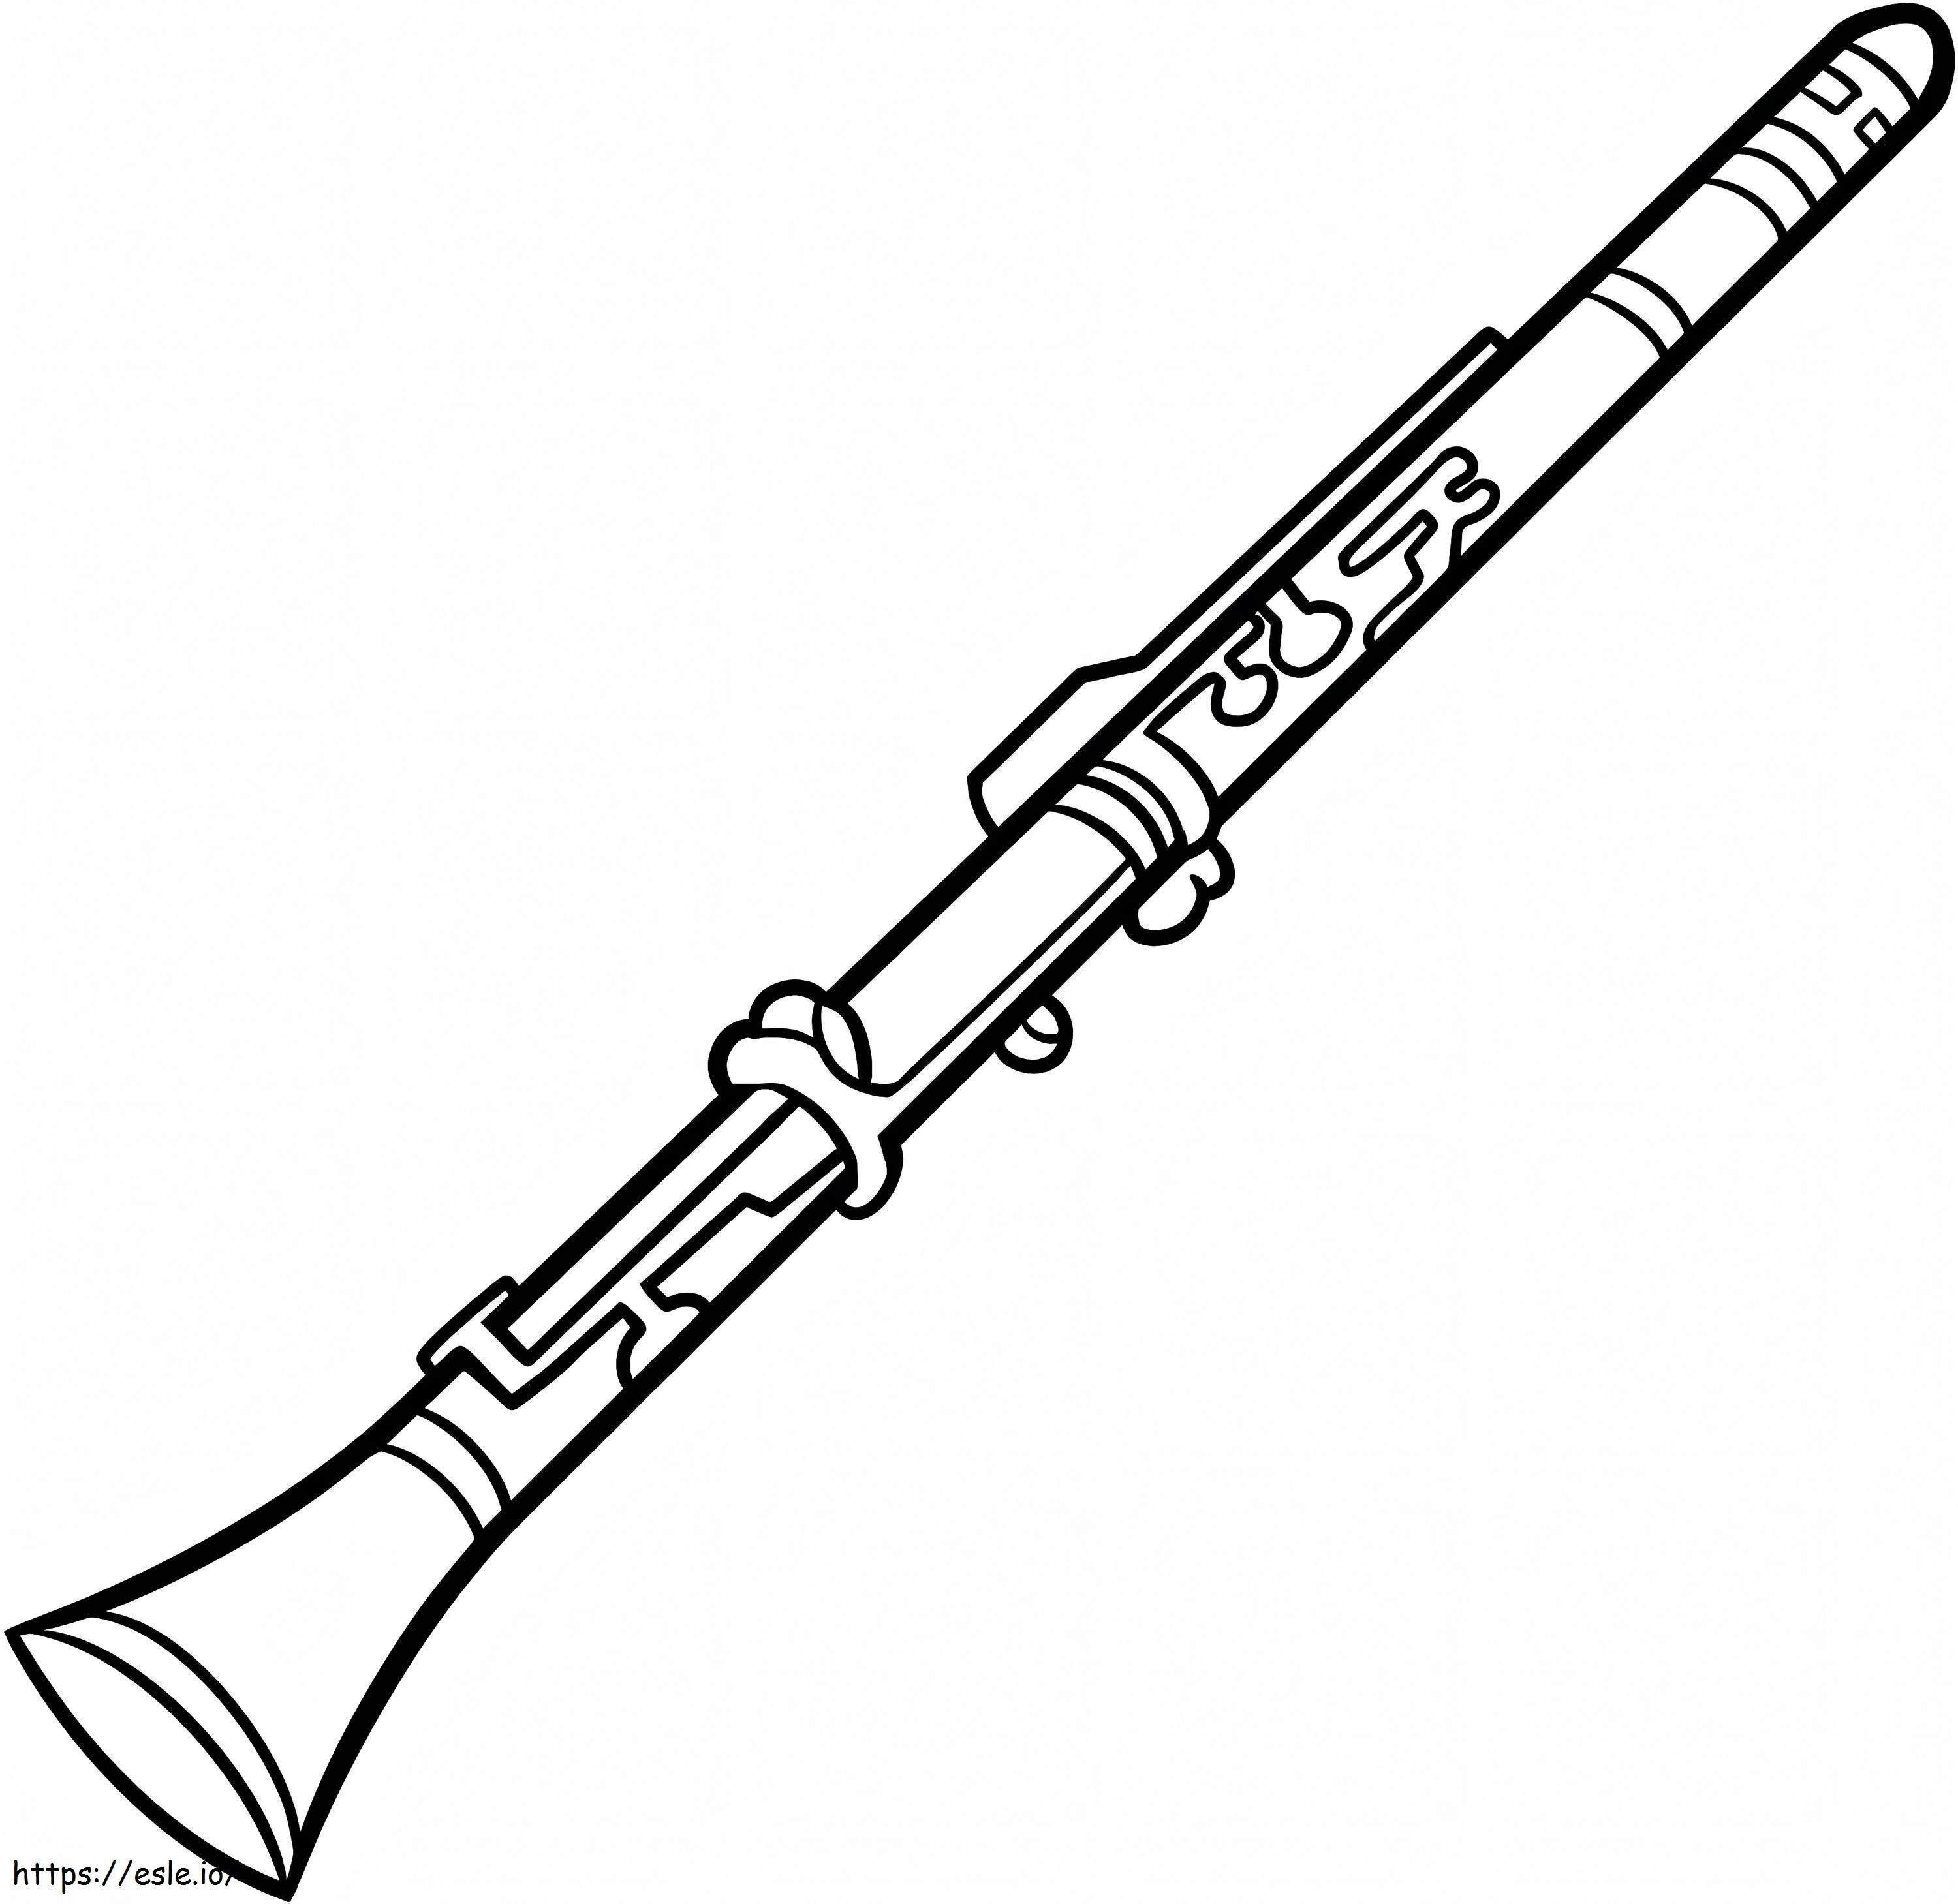 Un clarinet de colorat